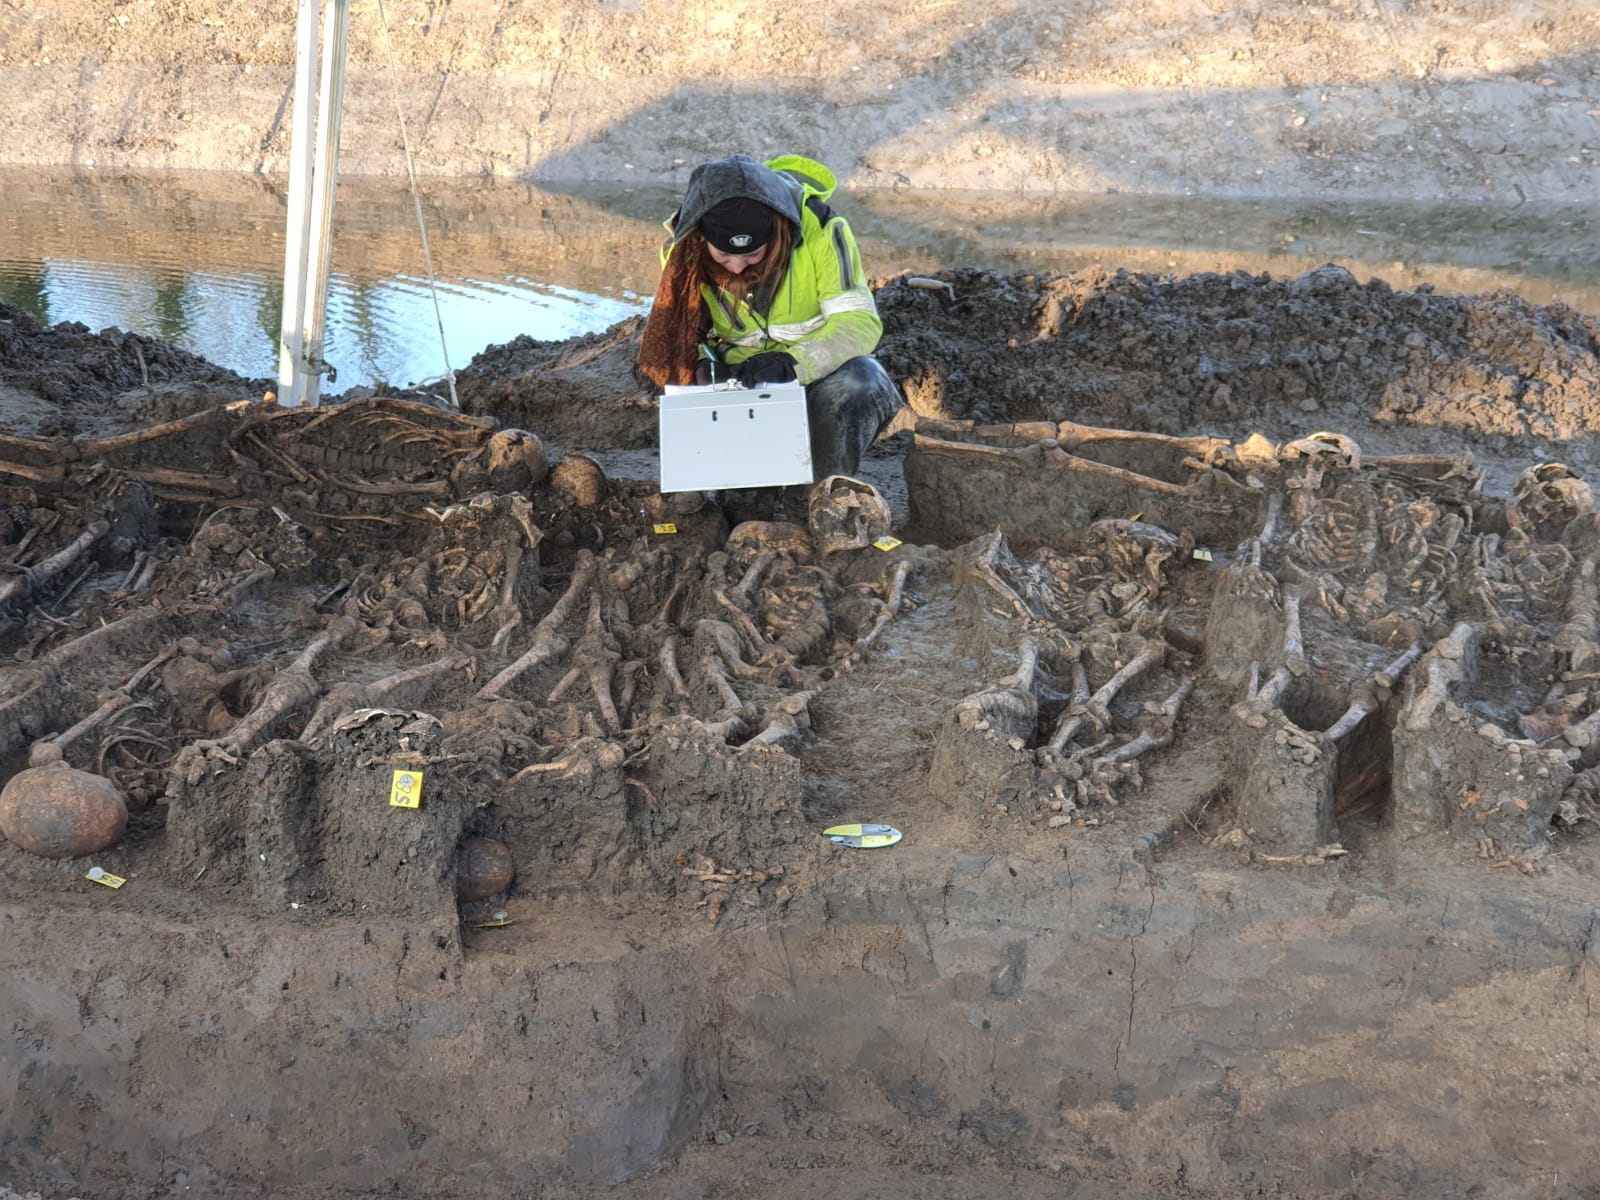 82 British skeletons found in Dutch mass grave